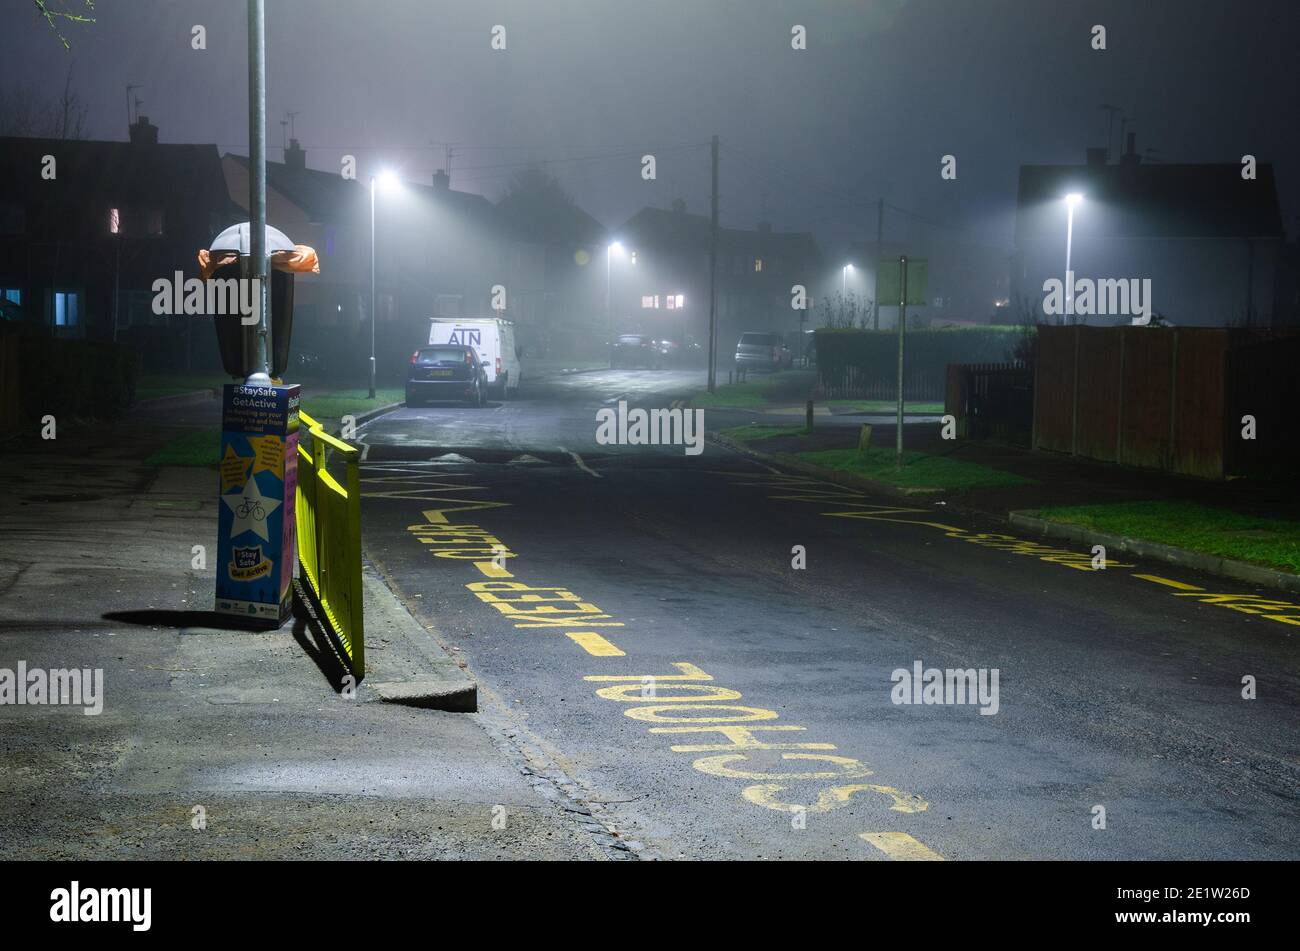 Nachtaufnahme von 'School Keep Clear', gemalt auf einer Straße in einem Wohngebiet. Straßenlaternen wirken im Nebel diffus. Stockfoto